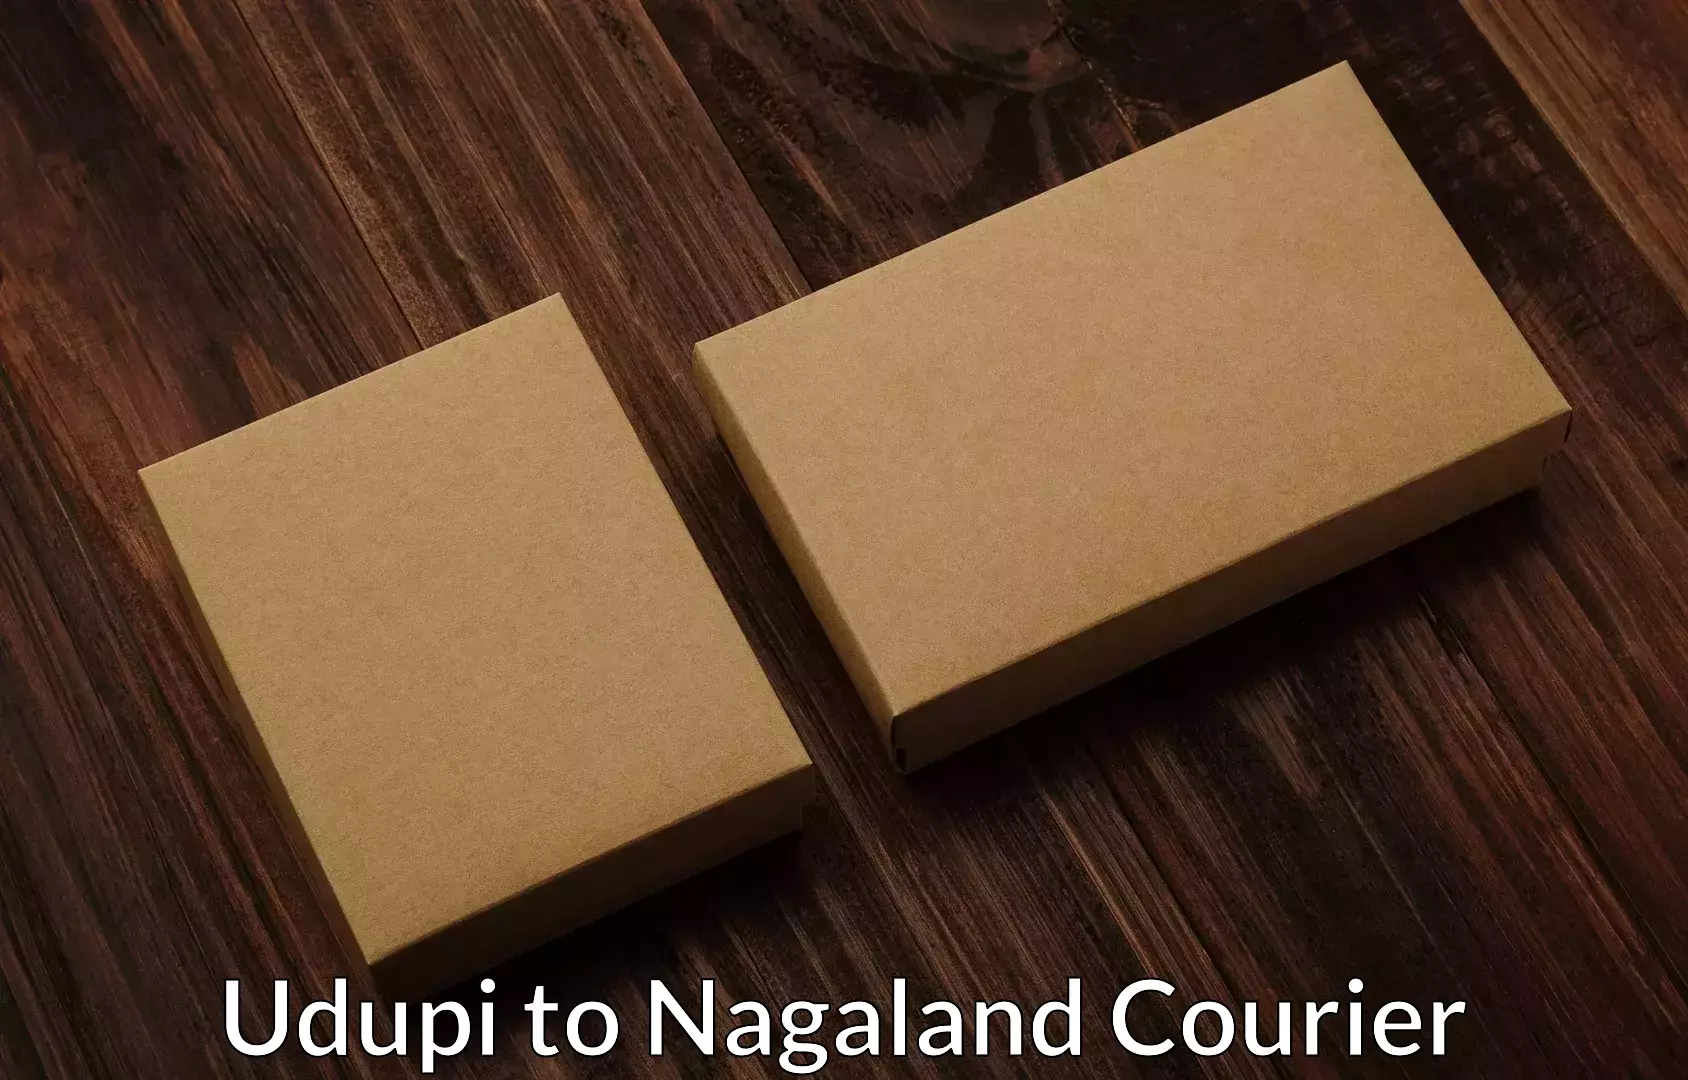 Furniture transport specialists Udupi to NIT Nagaland